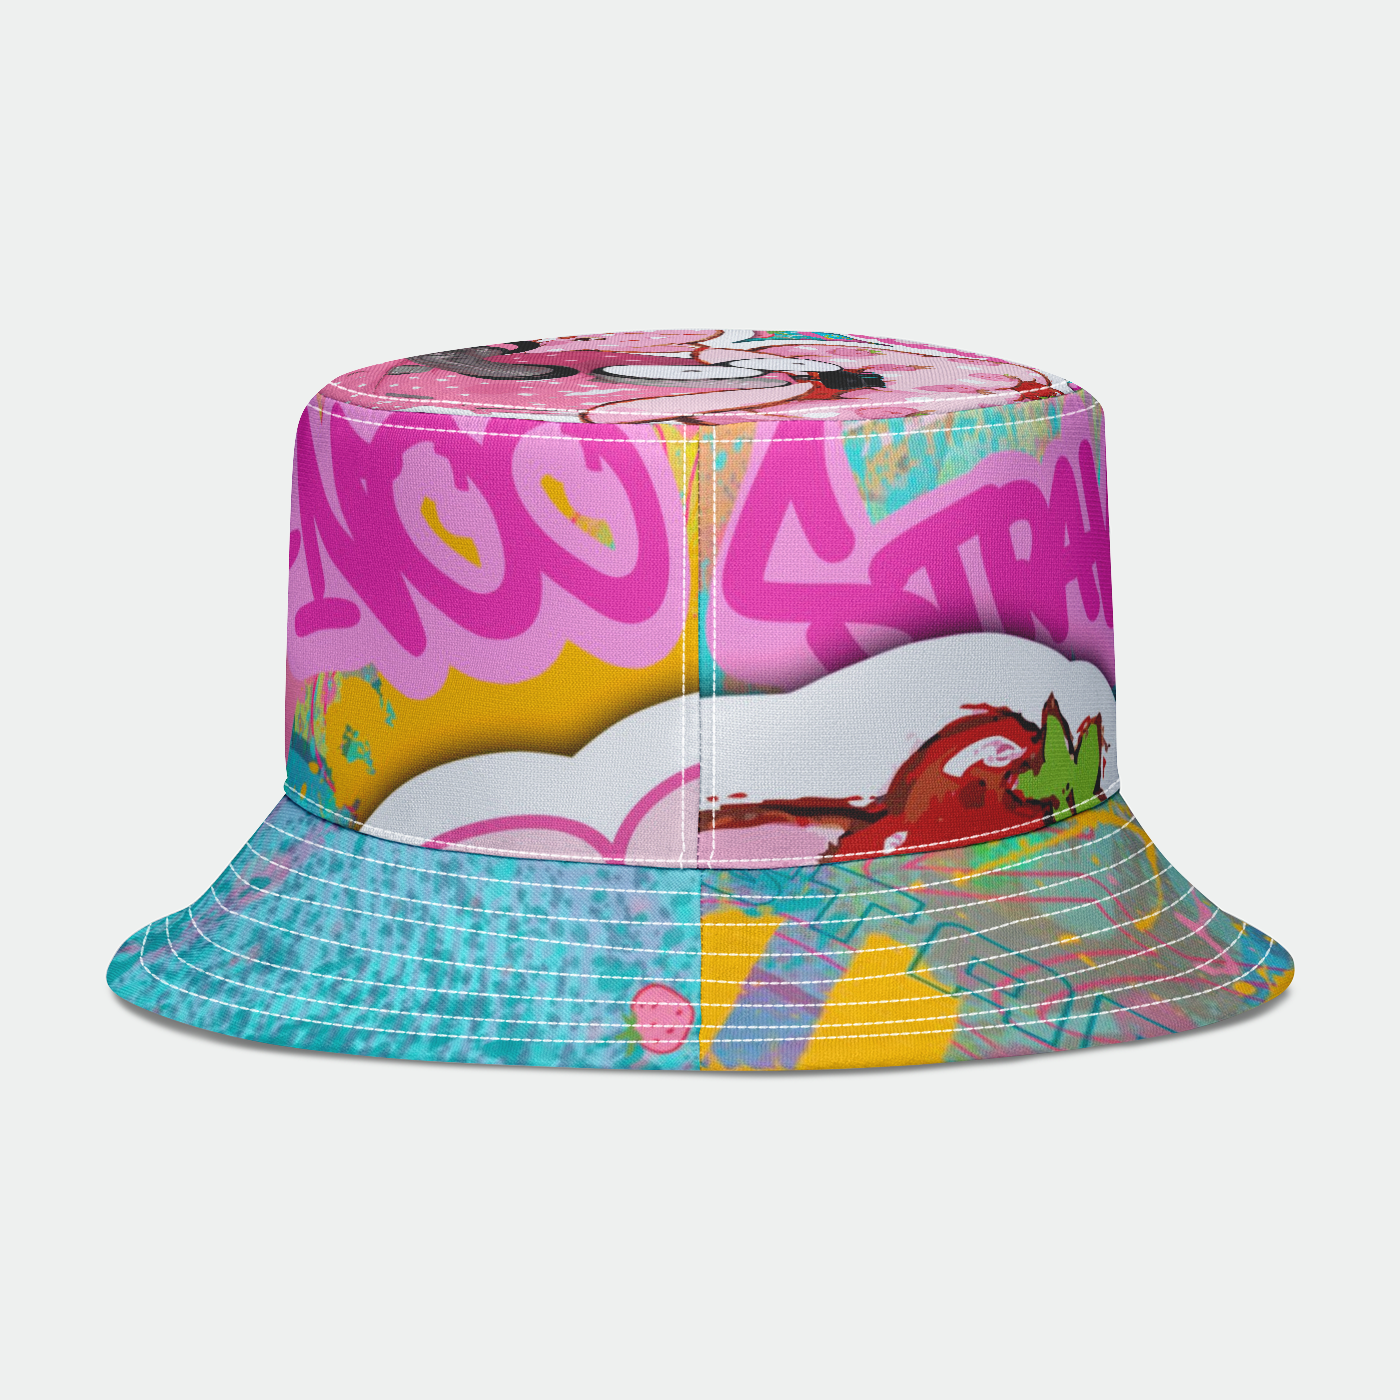 Strawberry Shortcake x Teletubbies x Murwalls Limited Edition Bucket Hat